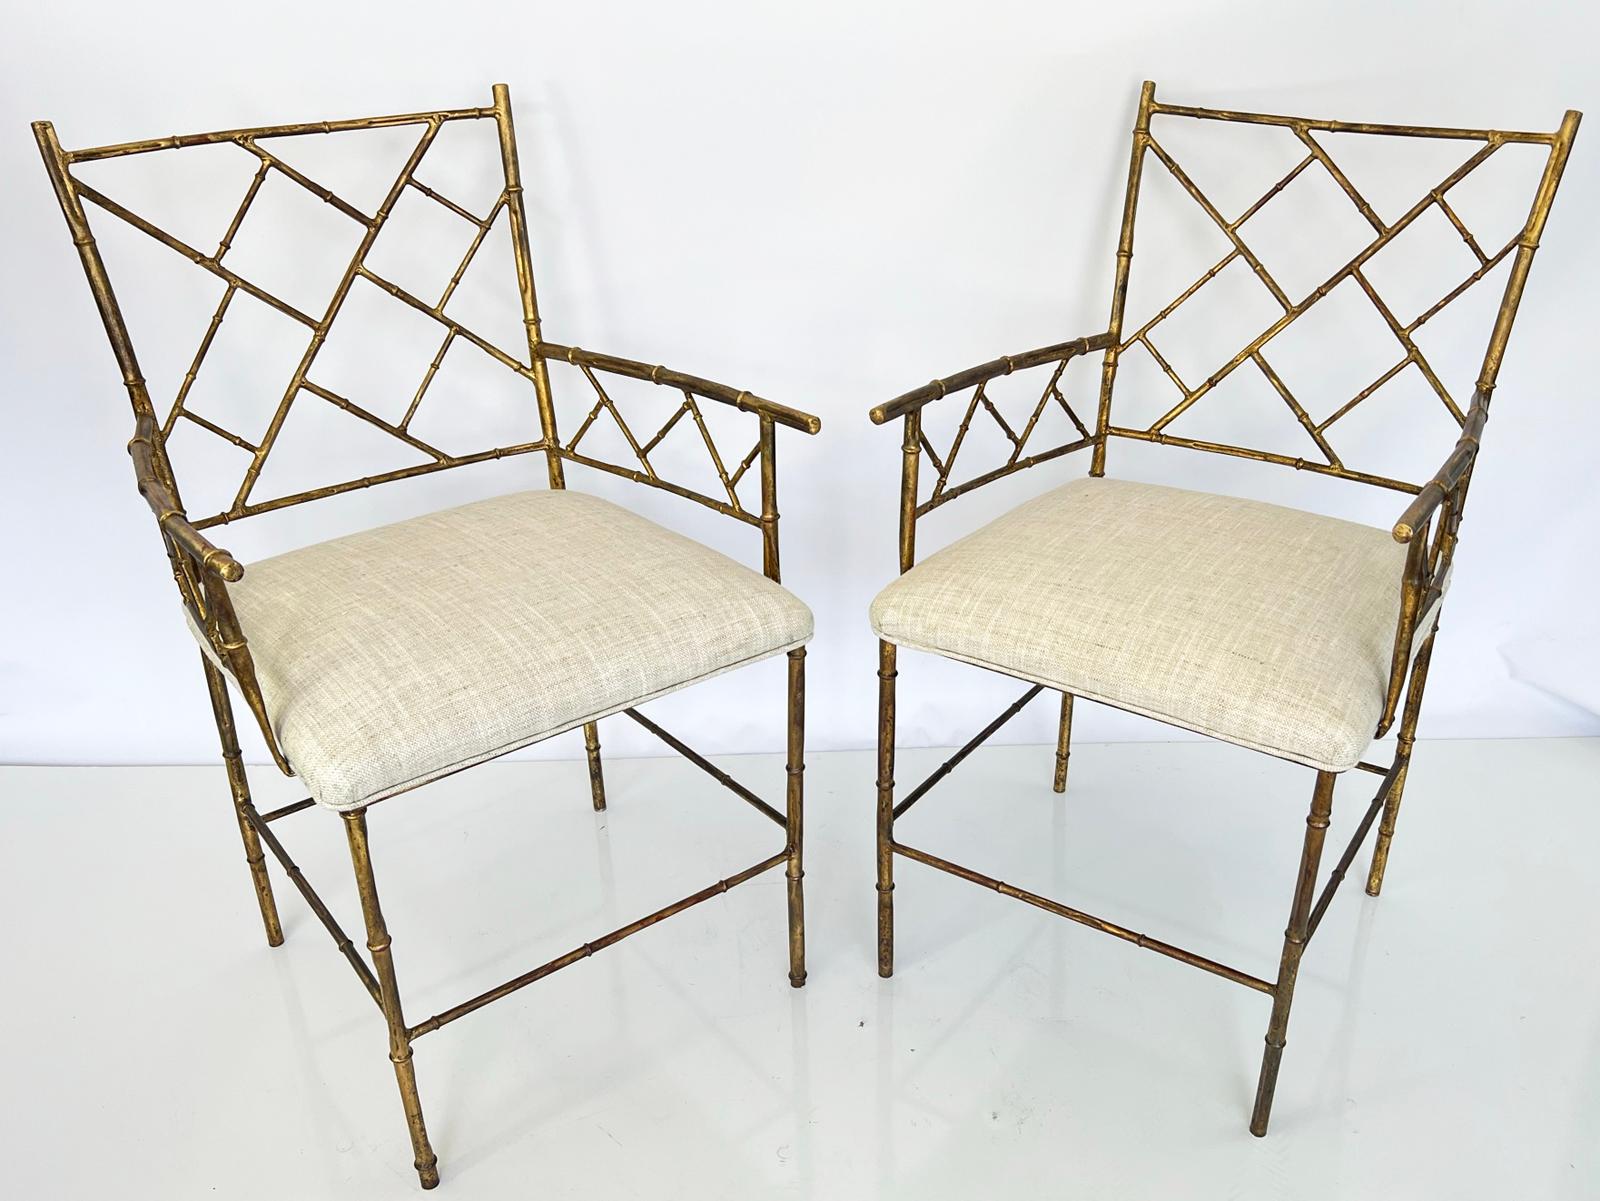 Paar Sessel aus vergoldetem Eisen, jeder Rahmen in Bambusform, mit quadratischer Rückenlehne und Armlehnen, die mit Laubsägearbeiten im chinesischen Chippendale-Stil verziert sind, der Kronensitz aus Leinen auf vier Beinen, verbunden durch eine